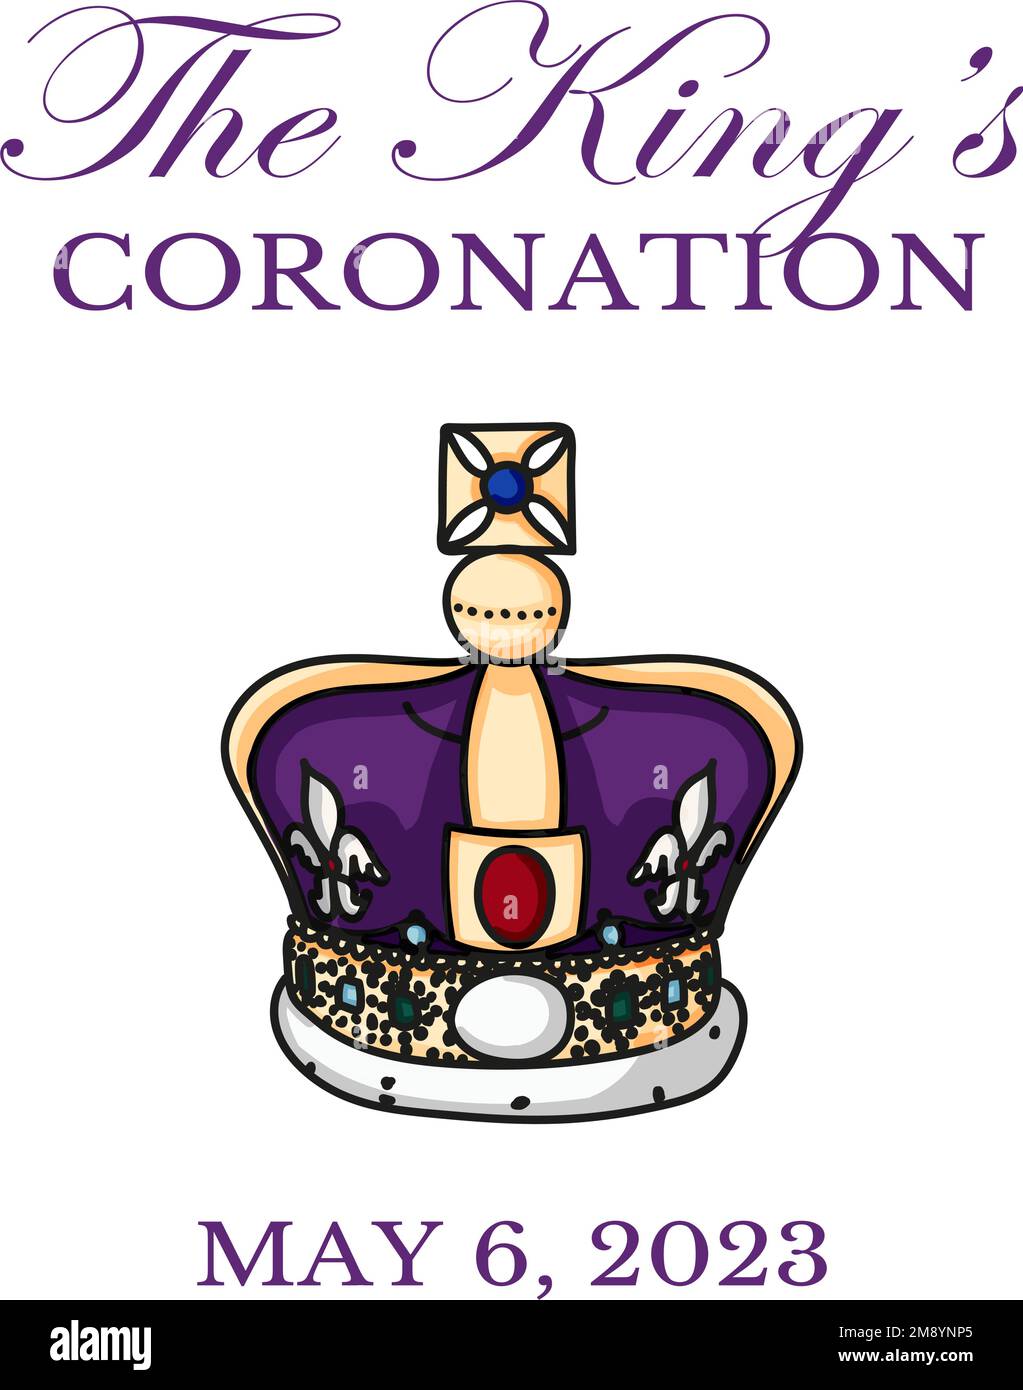 Angleterre - 6th de mai 2023: Affiche pour le Roi Charles III Coronation avec illustration du vecteur de drapeau britannique. Carte de vœux pour célébrer le couronnement du prince Charles de Galles devient roi d'Angleterre. Illustration de Vecteur